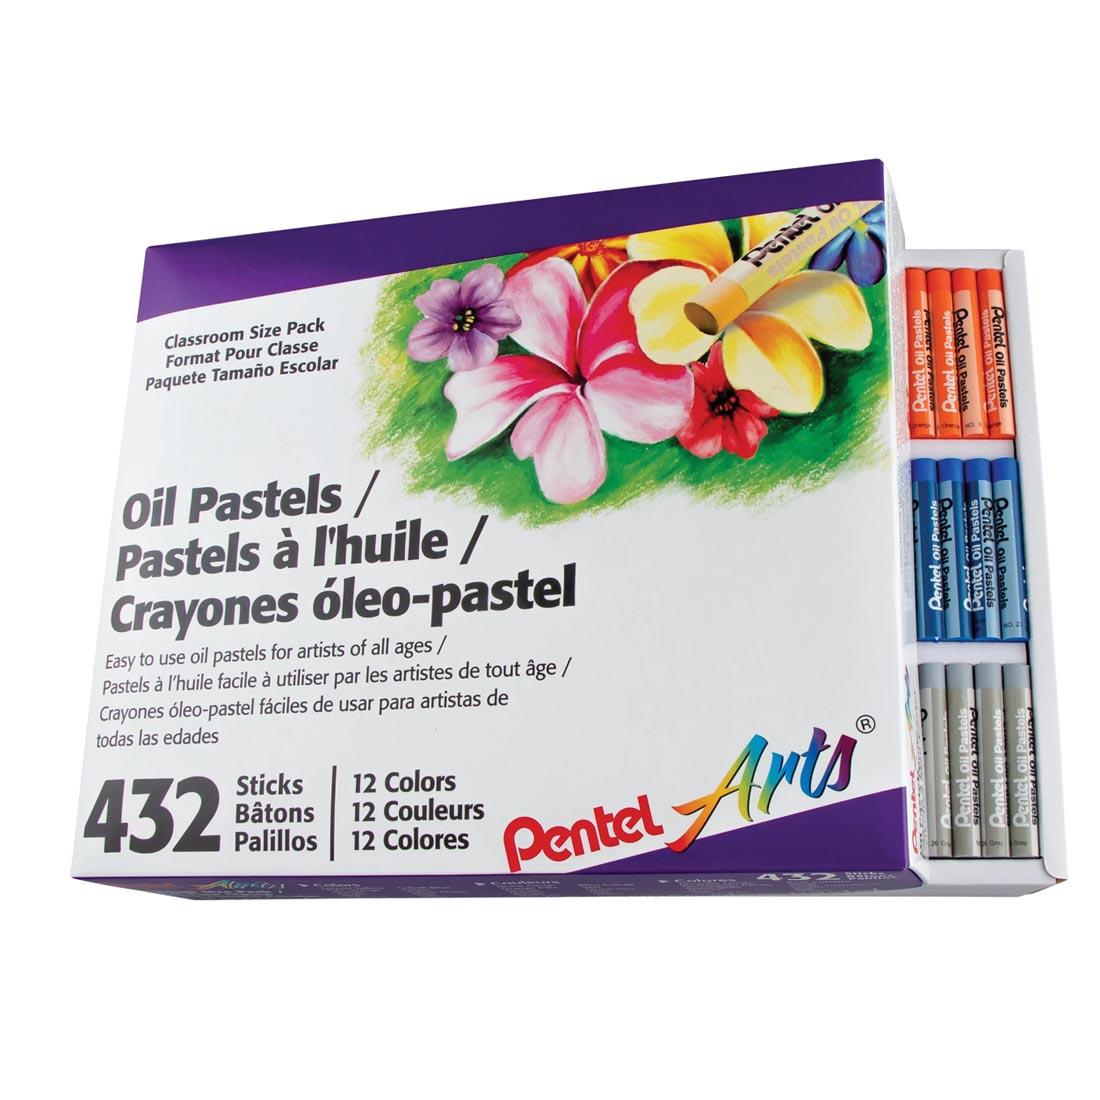 Pentel Arts Oil Pastels 432-Count Set